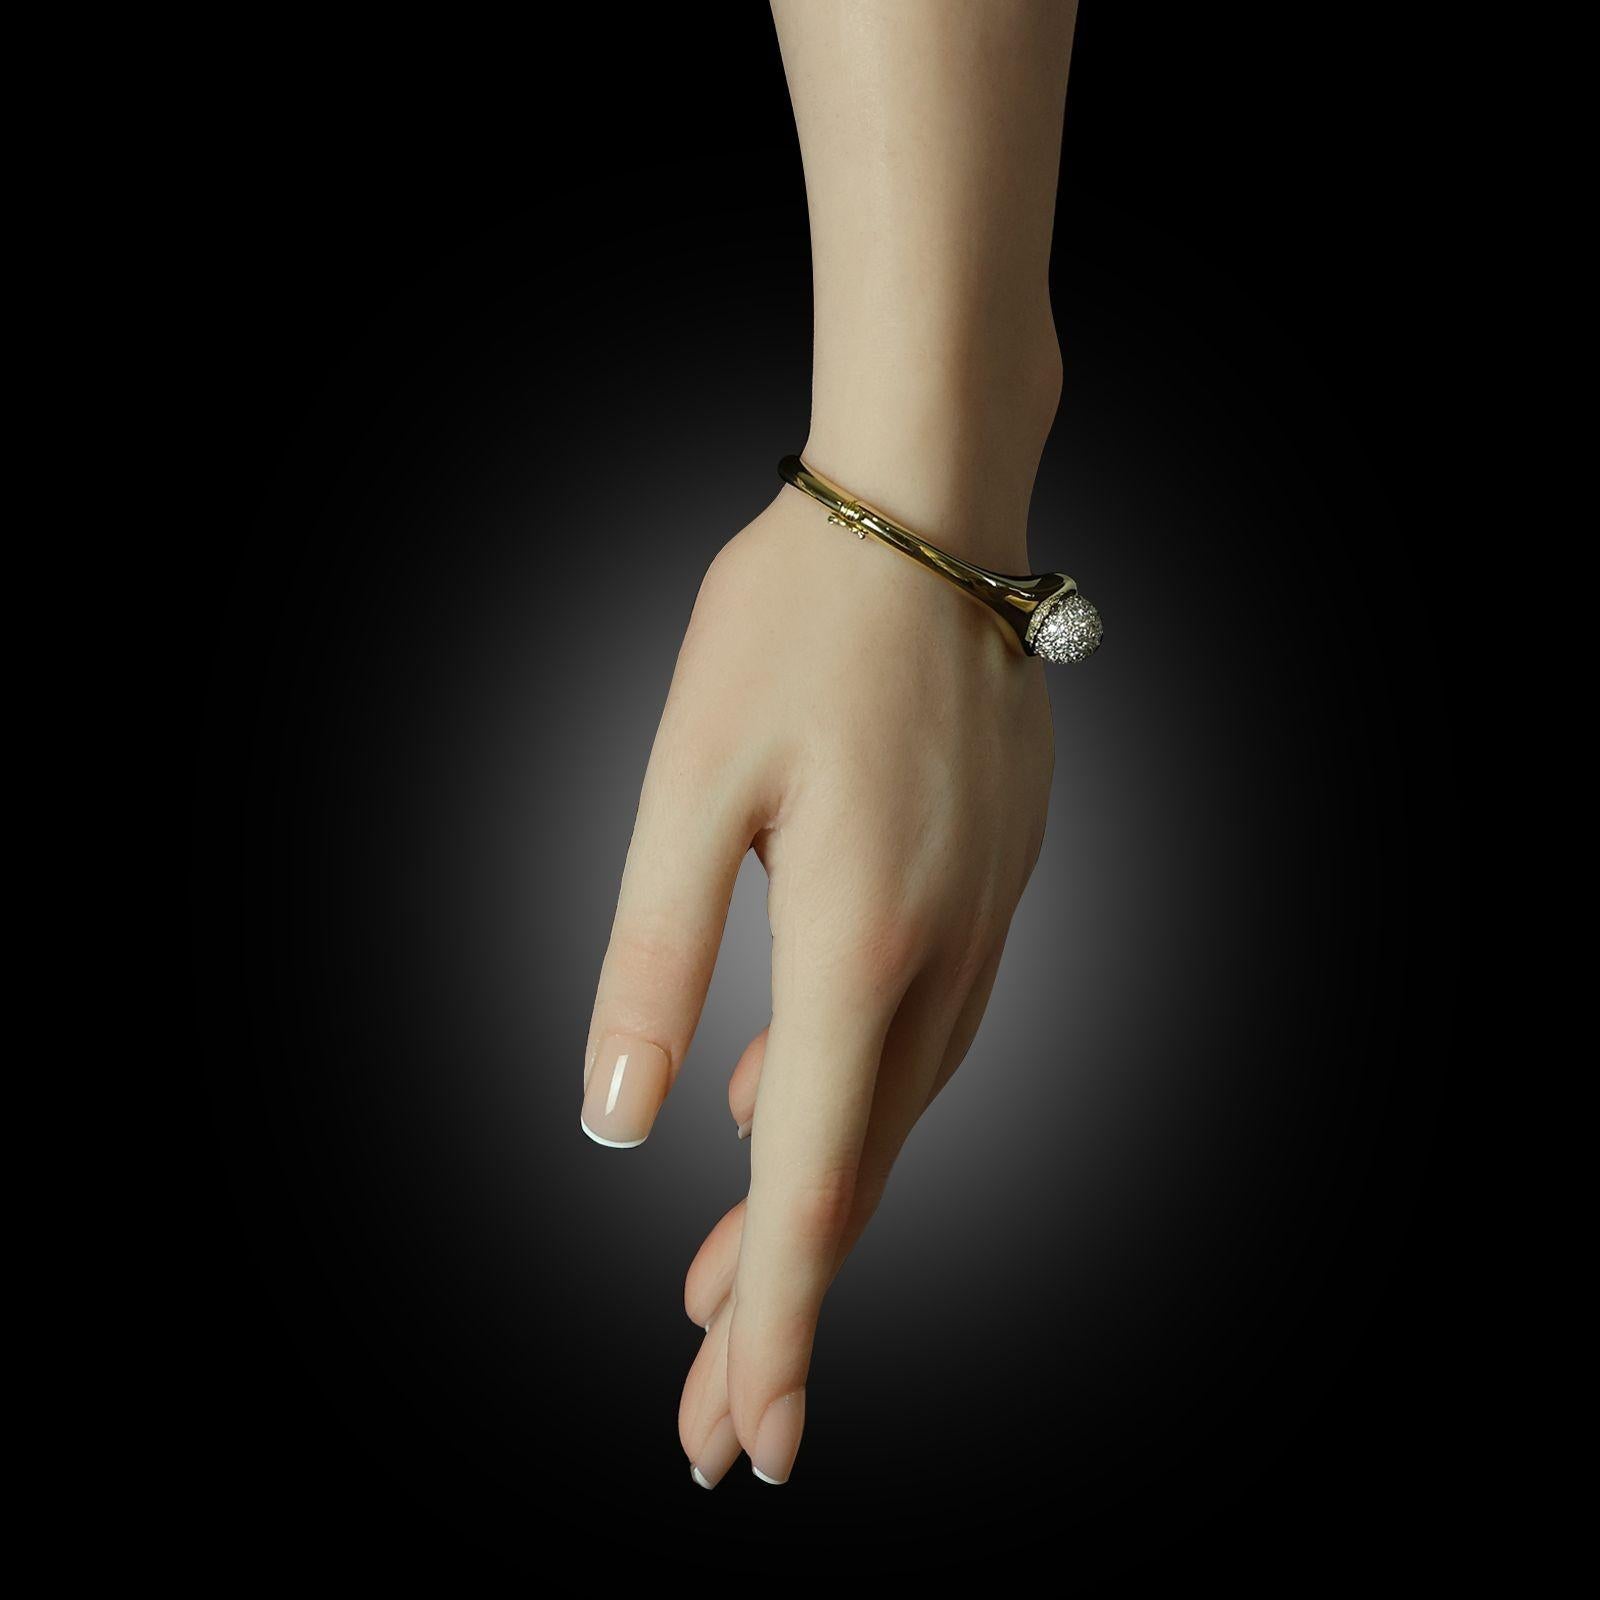 Un bracelet en or et diamants conçu par Paloma Picasso pour Tiffany & Co. vers 1980, le bracelet solide en or jaune 18ct avec un profil ovale, une ouverture à charnière sur le côté et une zone plus large se rétrécissant vers le sommet central qui